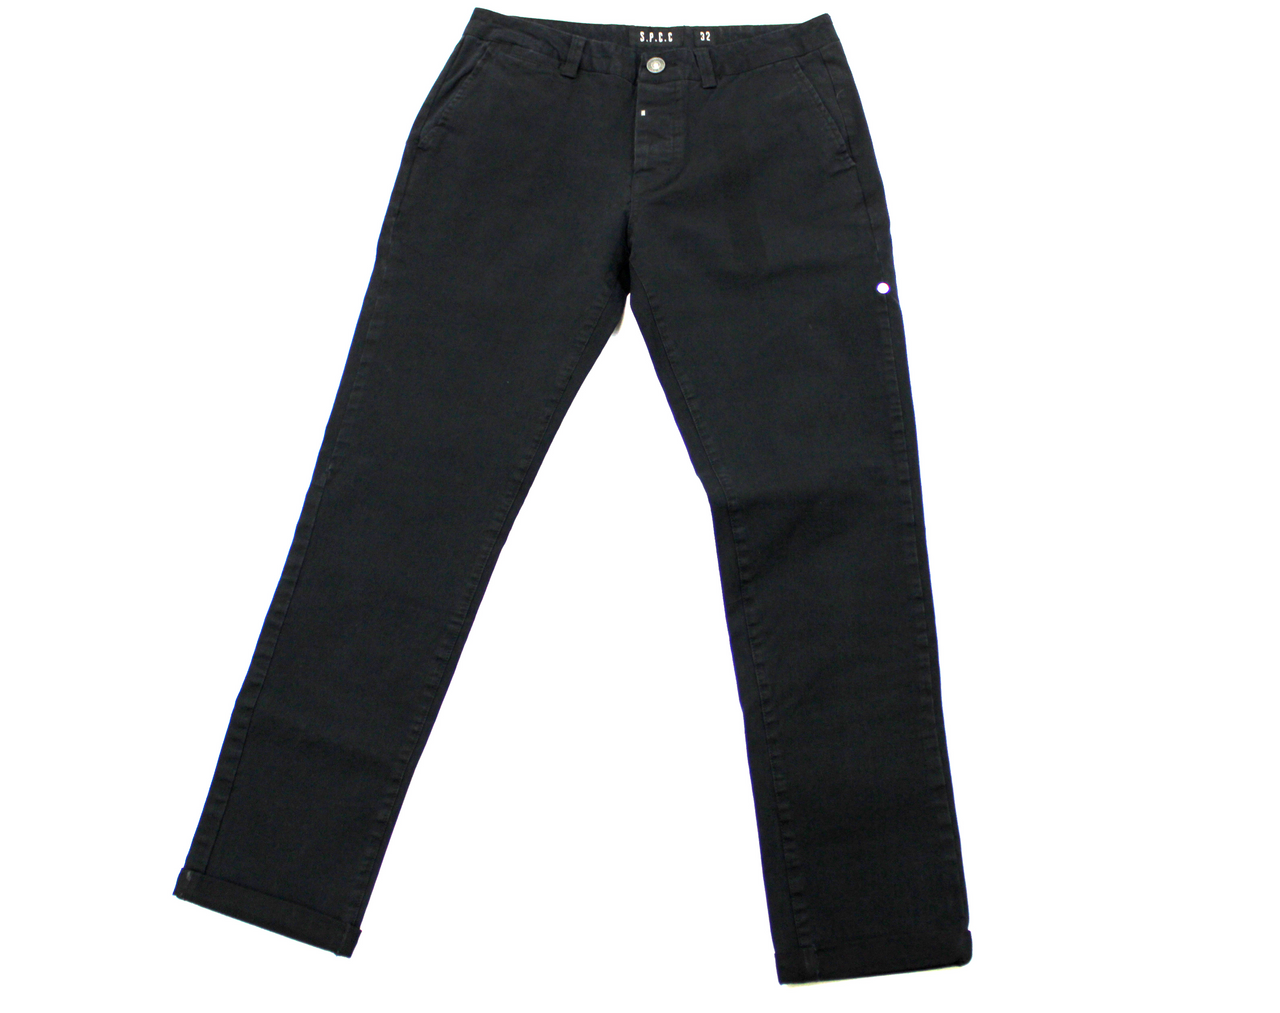 SPCC Black Jean